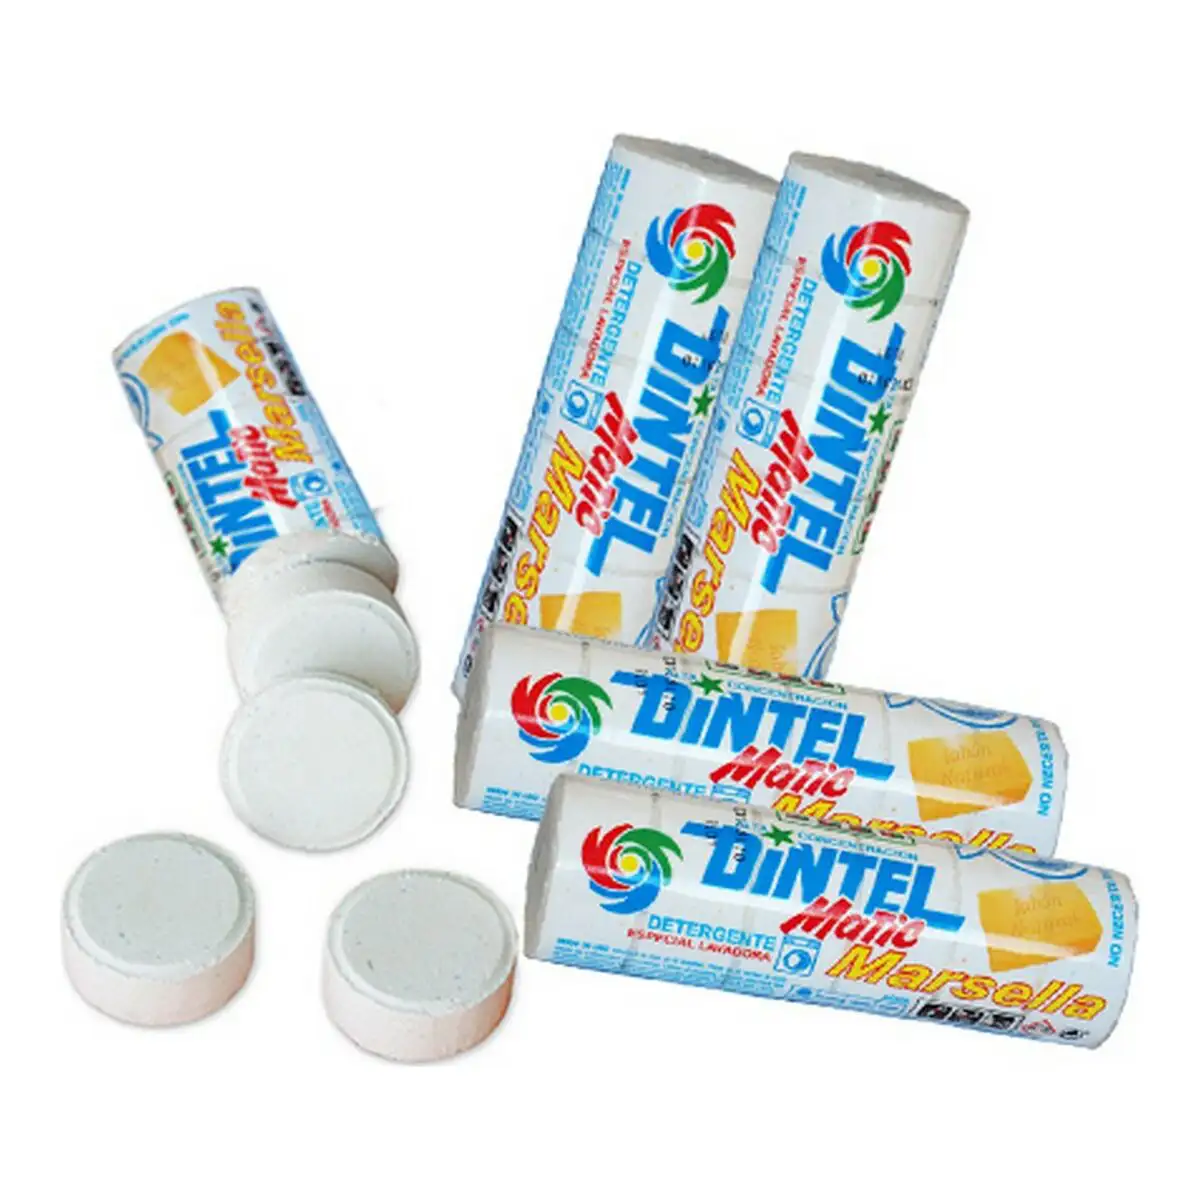 Detergent dintel savon de marseille 200 g _8076. DIAYTAR SENEGAL - Votre Destination pour un Shopping Éclairé. Parcourez notre boutique en ligne pour découvrir des produits de qualité qui embelliront votre quotidien.